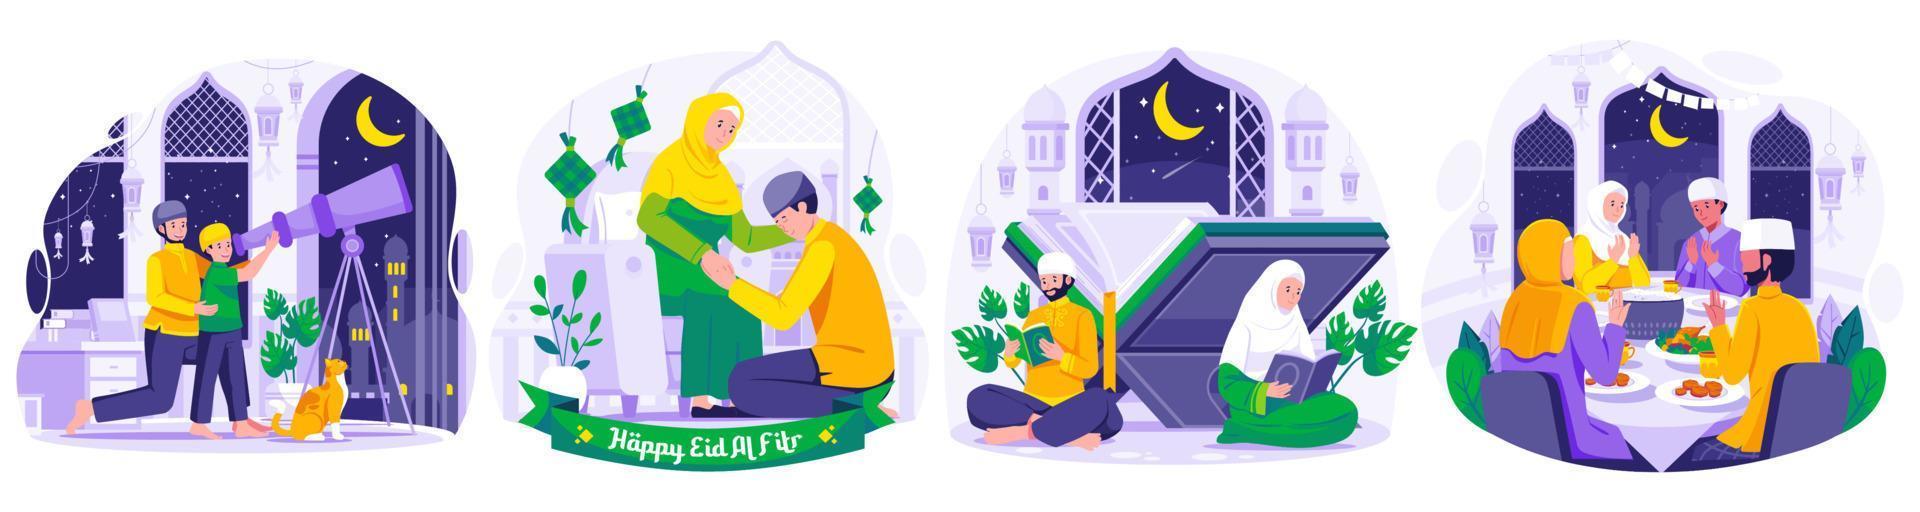 Illustration einstellen von Ramadan Konzept mit Muslim Menschen Gruß und feiern Ramadan kareem und eid Mubarak. Gruß jeder andere und Entschuldigung. iftar Party. suchen zum hilal oder Neu Mond vektor